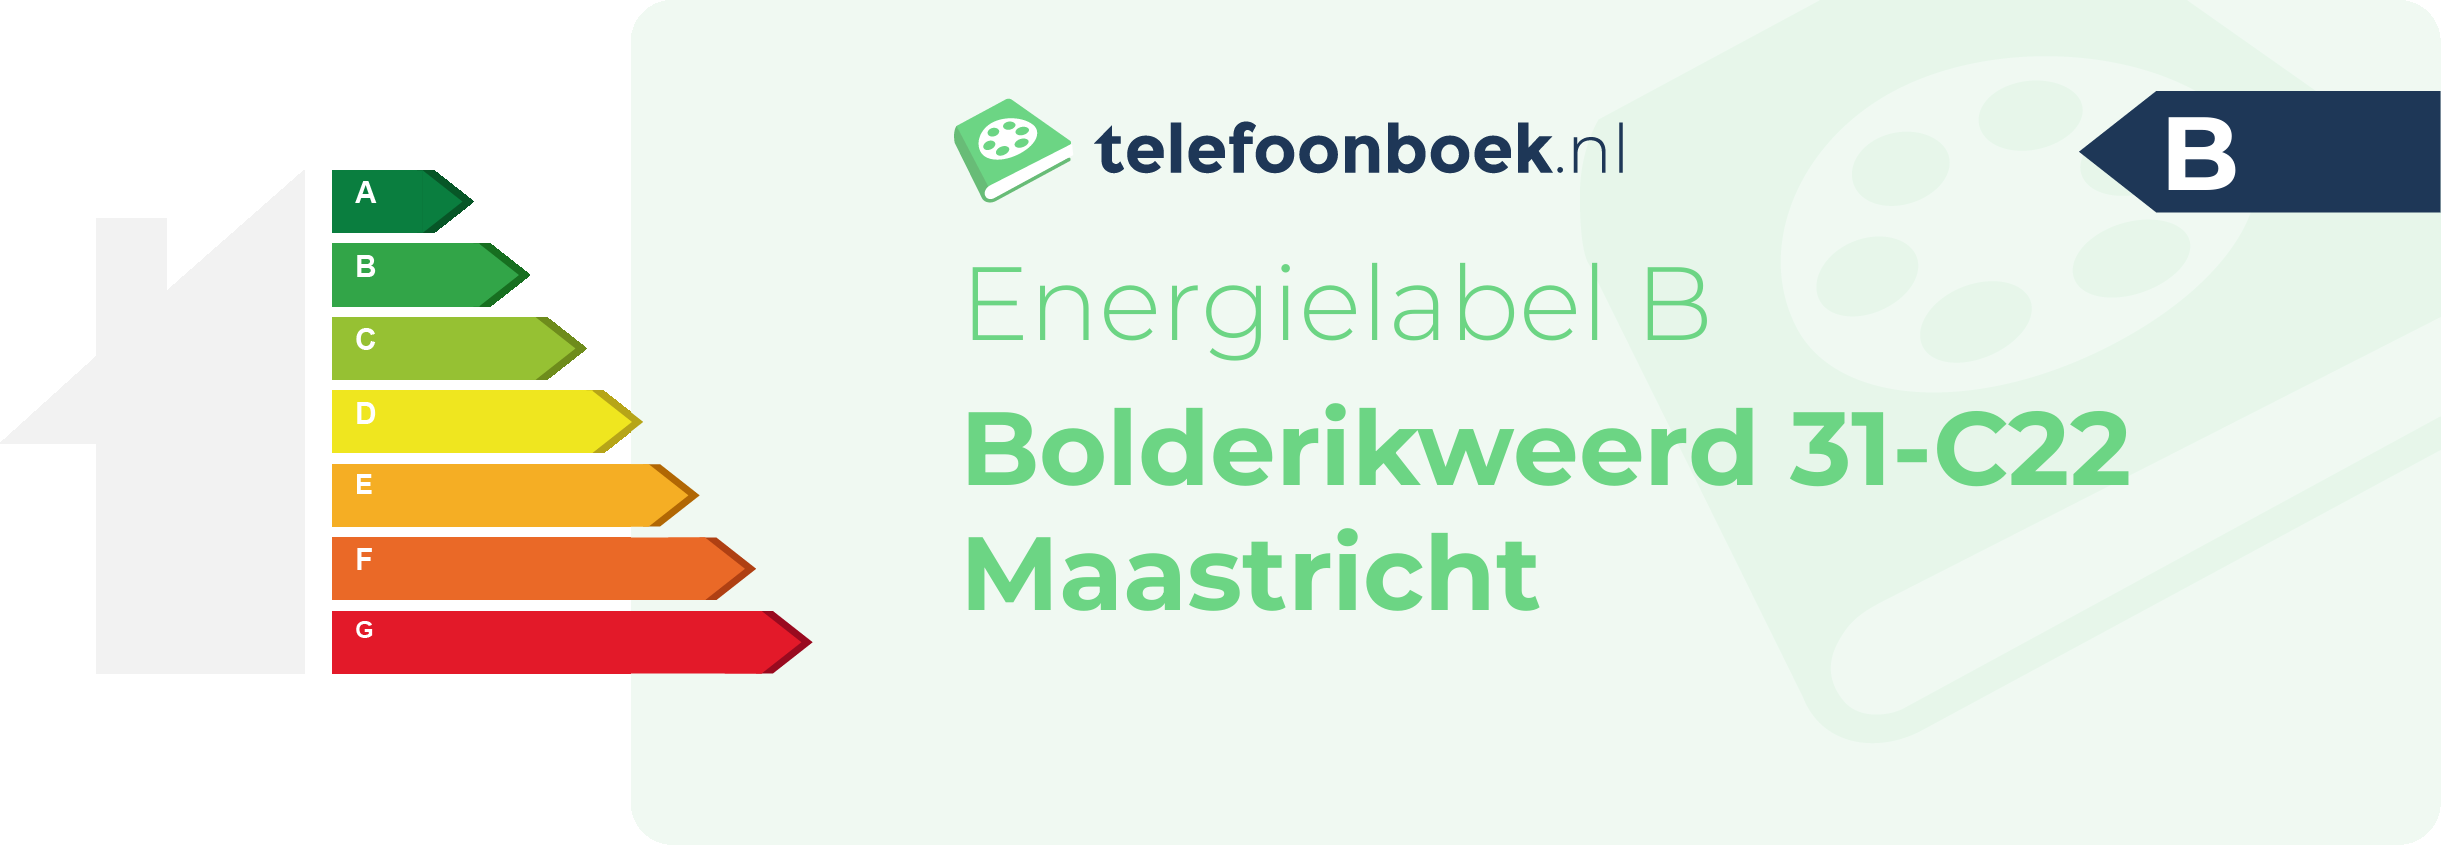 Energielabel Bolderikweerd 31-C22 Maastricht